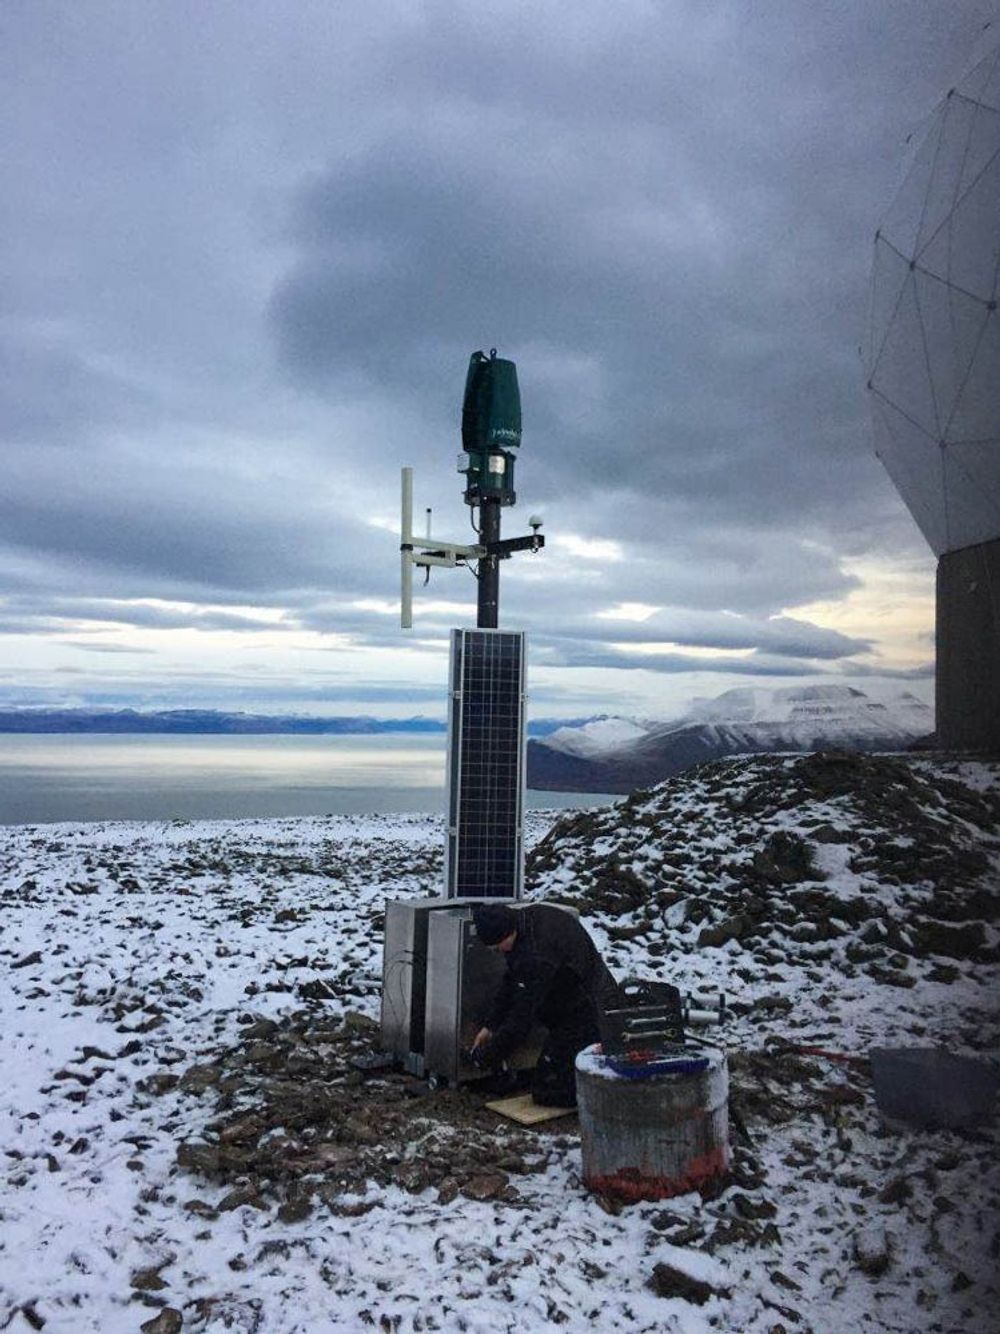 Montering av mast med solcelle og kommunikasjonsutstyr til Greenfield, Kystverkets nye ASI basestasjon på Svalbard. Prøvedrift skal gå fram til sommeren 2017.